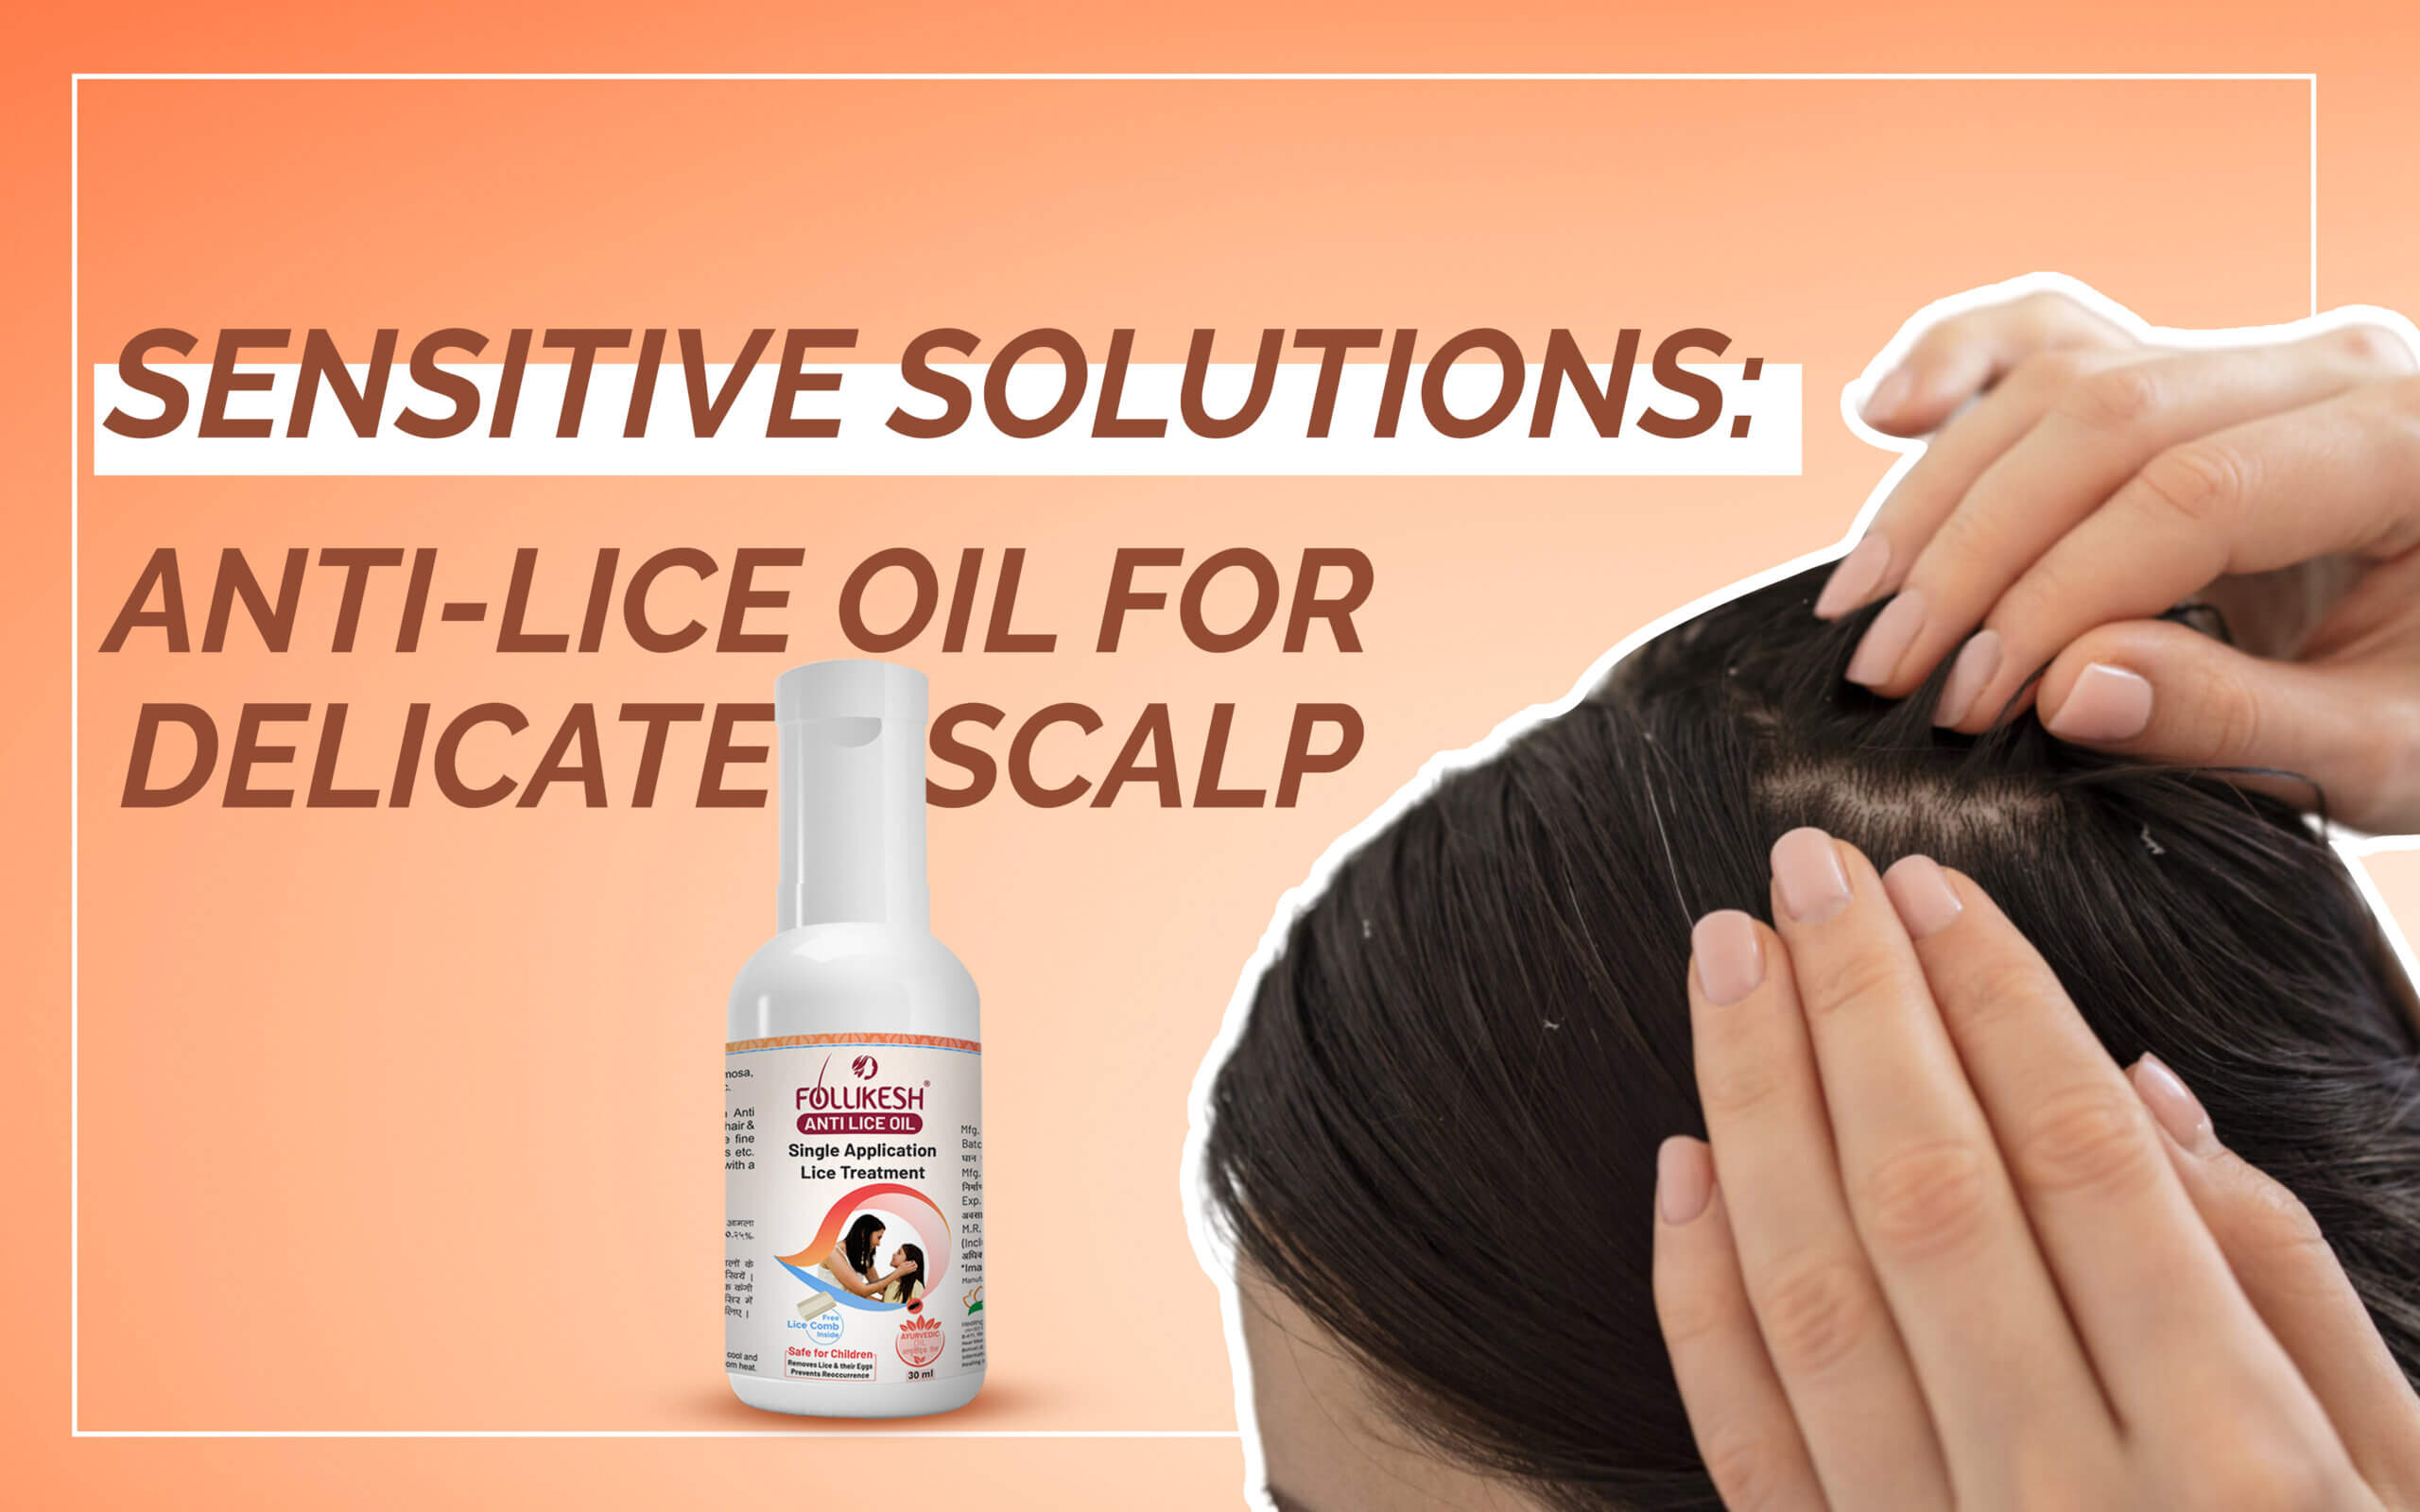 Anti-Lice Oil for Delicate Scalp